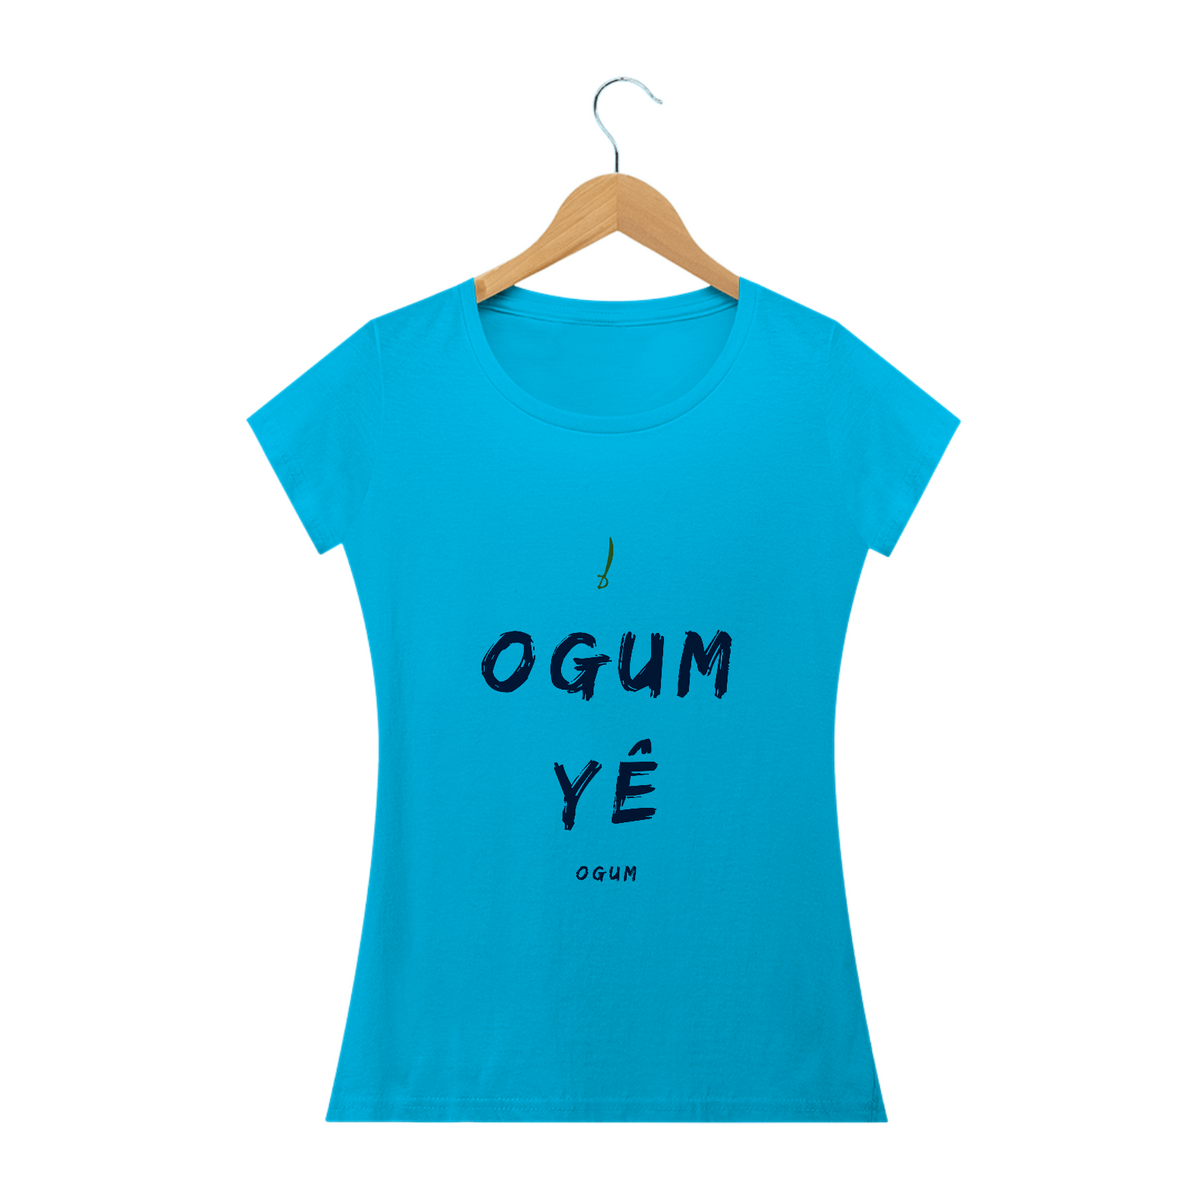 Nome do produto: Camiseta Feminina Ògún Saudação Ògún Yè Ògún yè 100% Algodão Fio 24.1, 145g costura simples e gola ribana